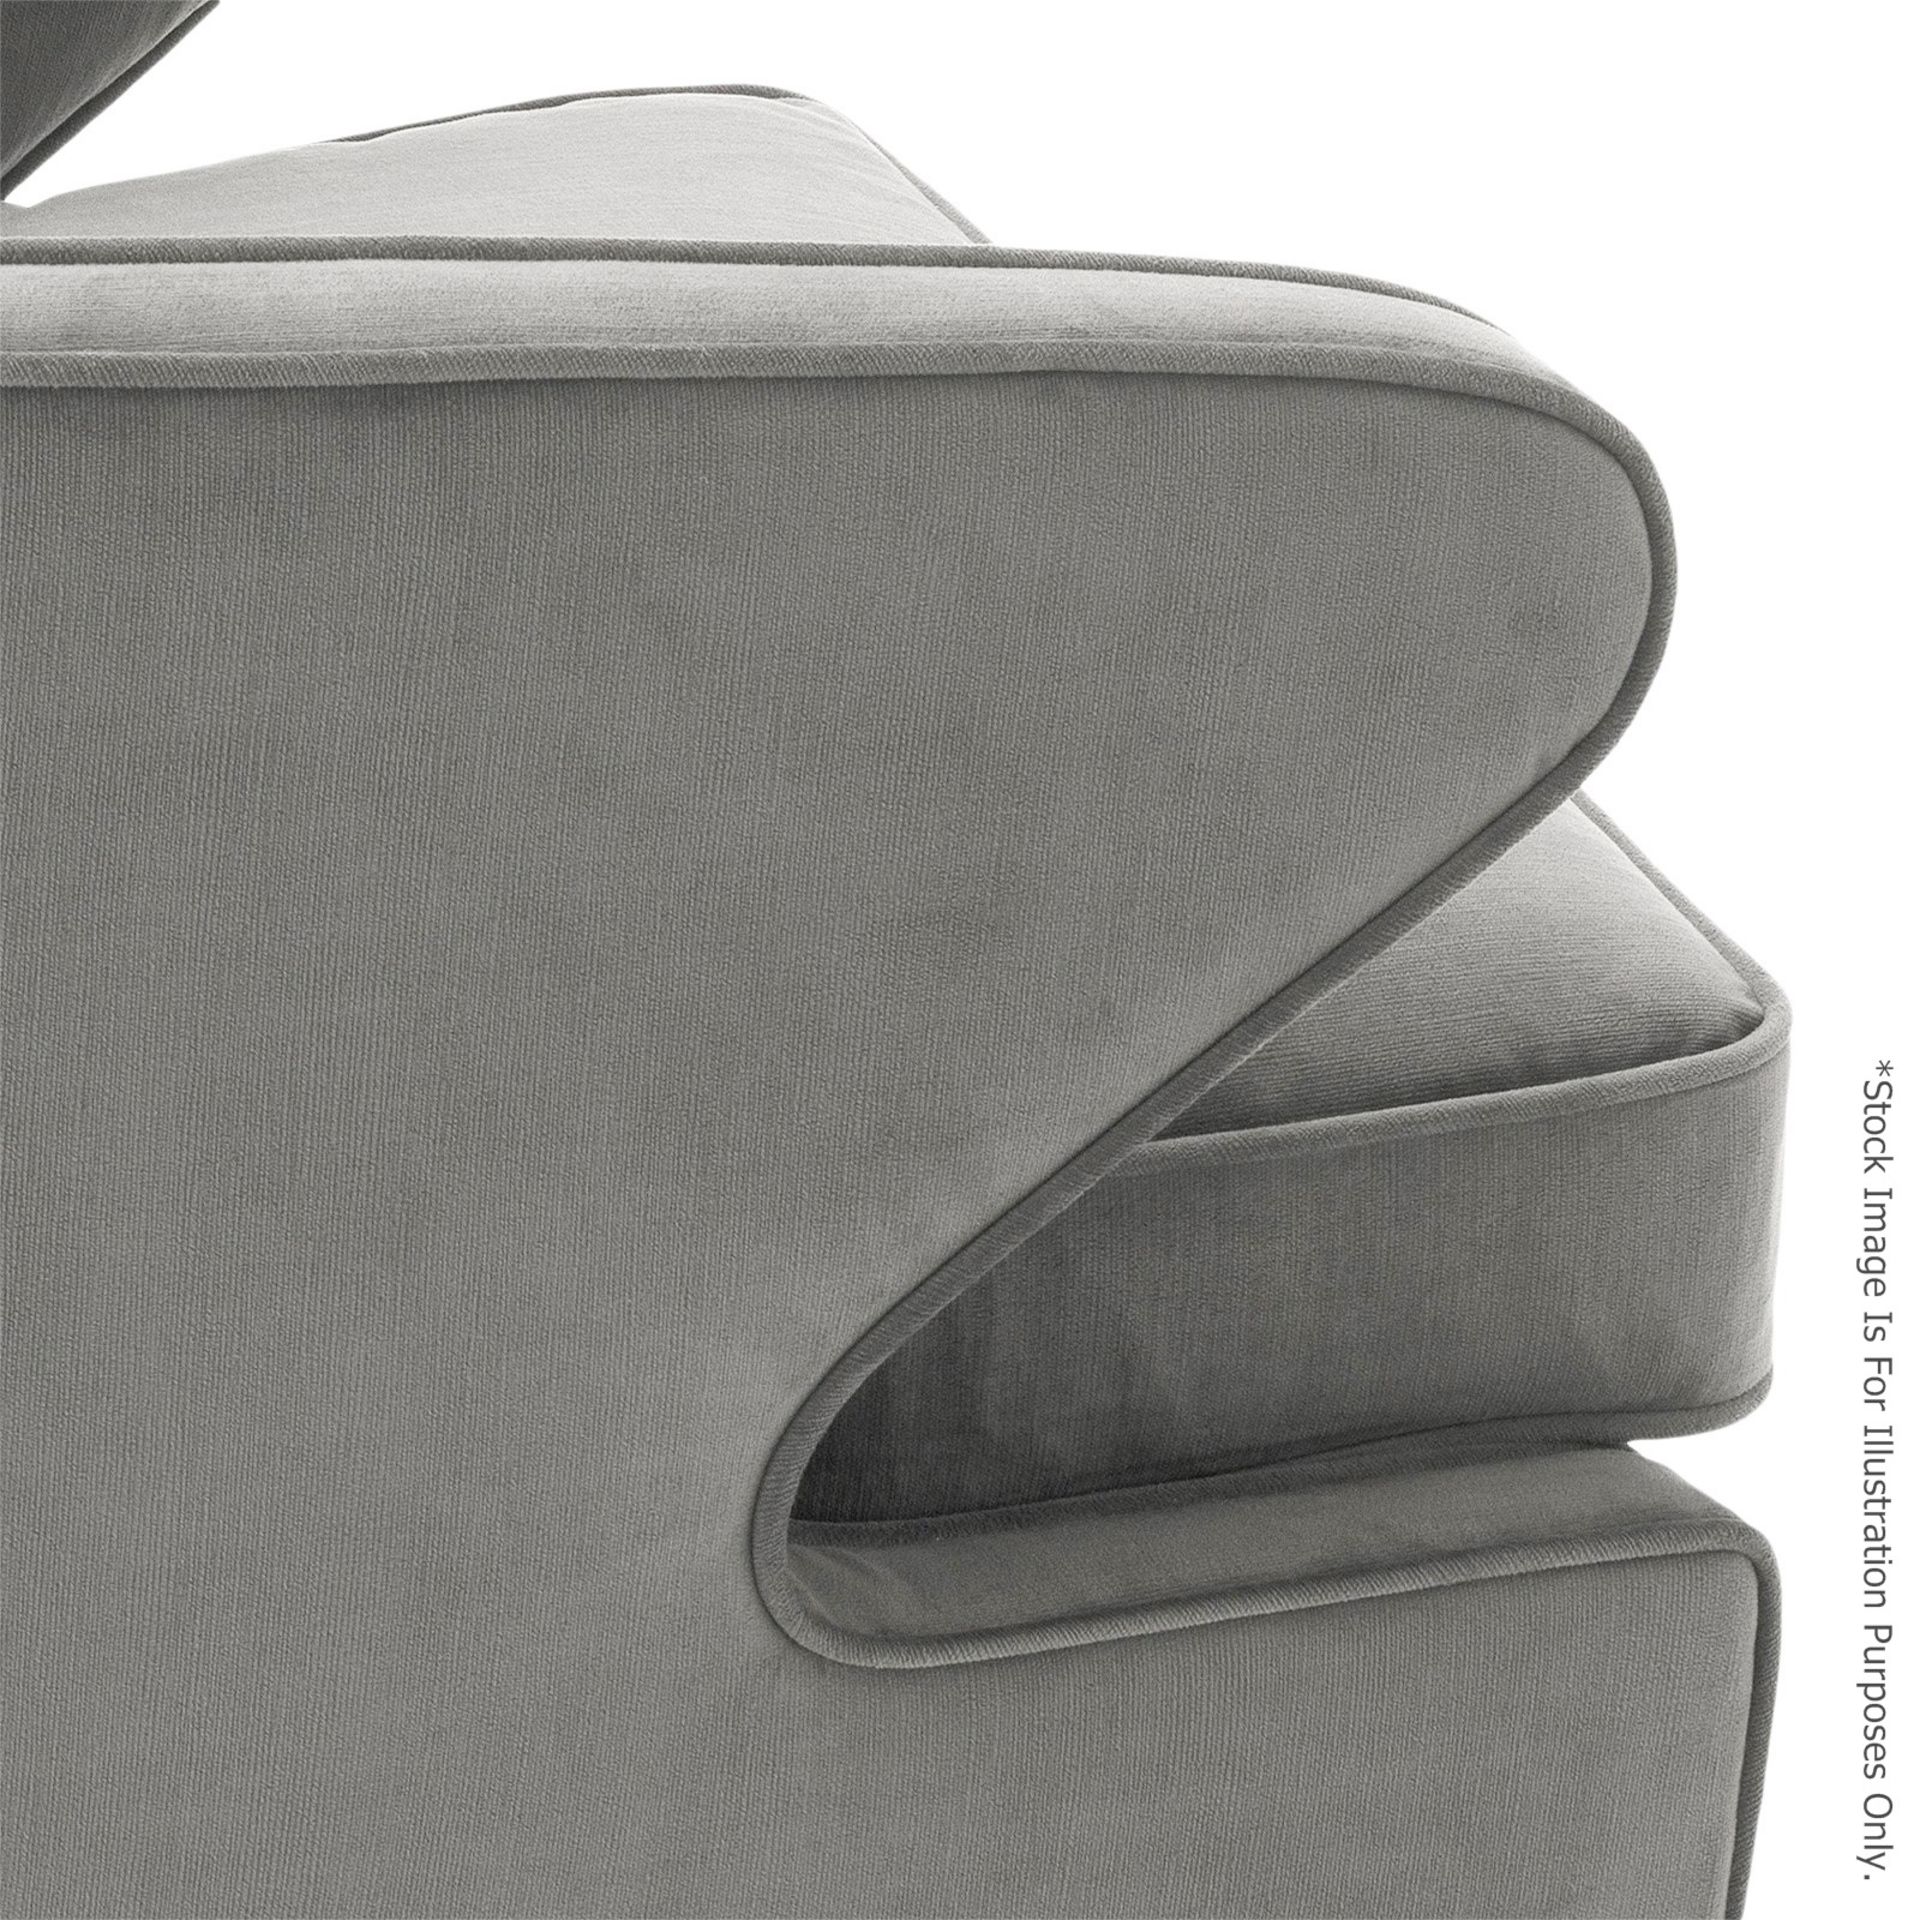 1 x EICHHOLTZ 'Dorset' Velvet Upholstered Chair In Granite Grey With Swivel Base - RRP £1,189 - Image 2 of 13